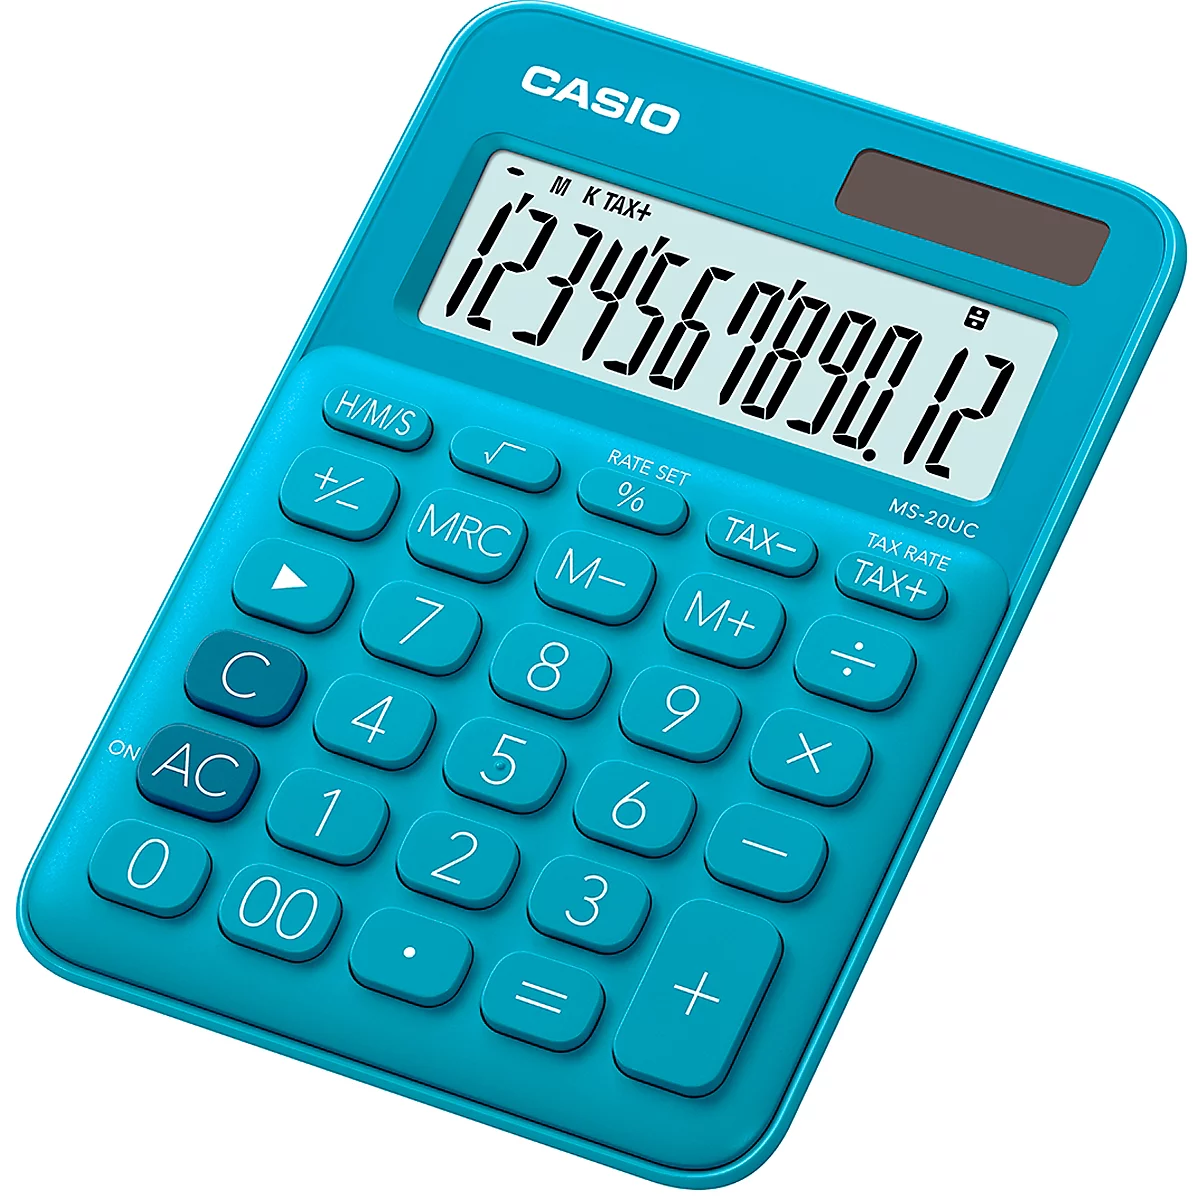 Calculadora de mesa Casio MS-20UC, pantalla LC de 12 dígitos, alimentado con batería/solar, turquesa